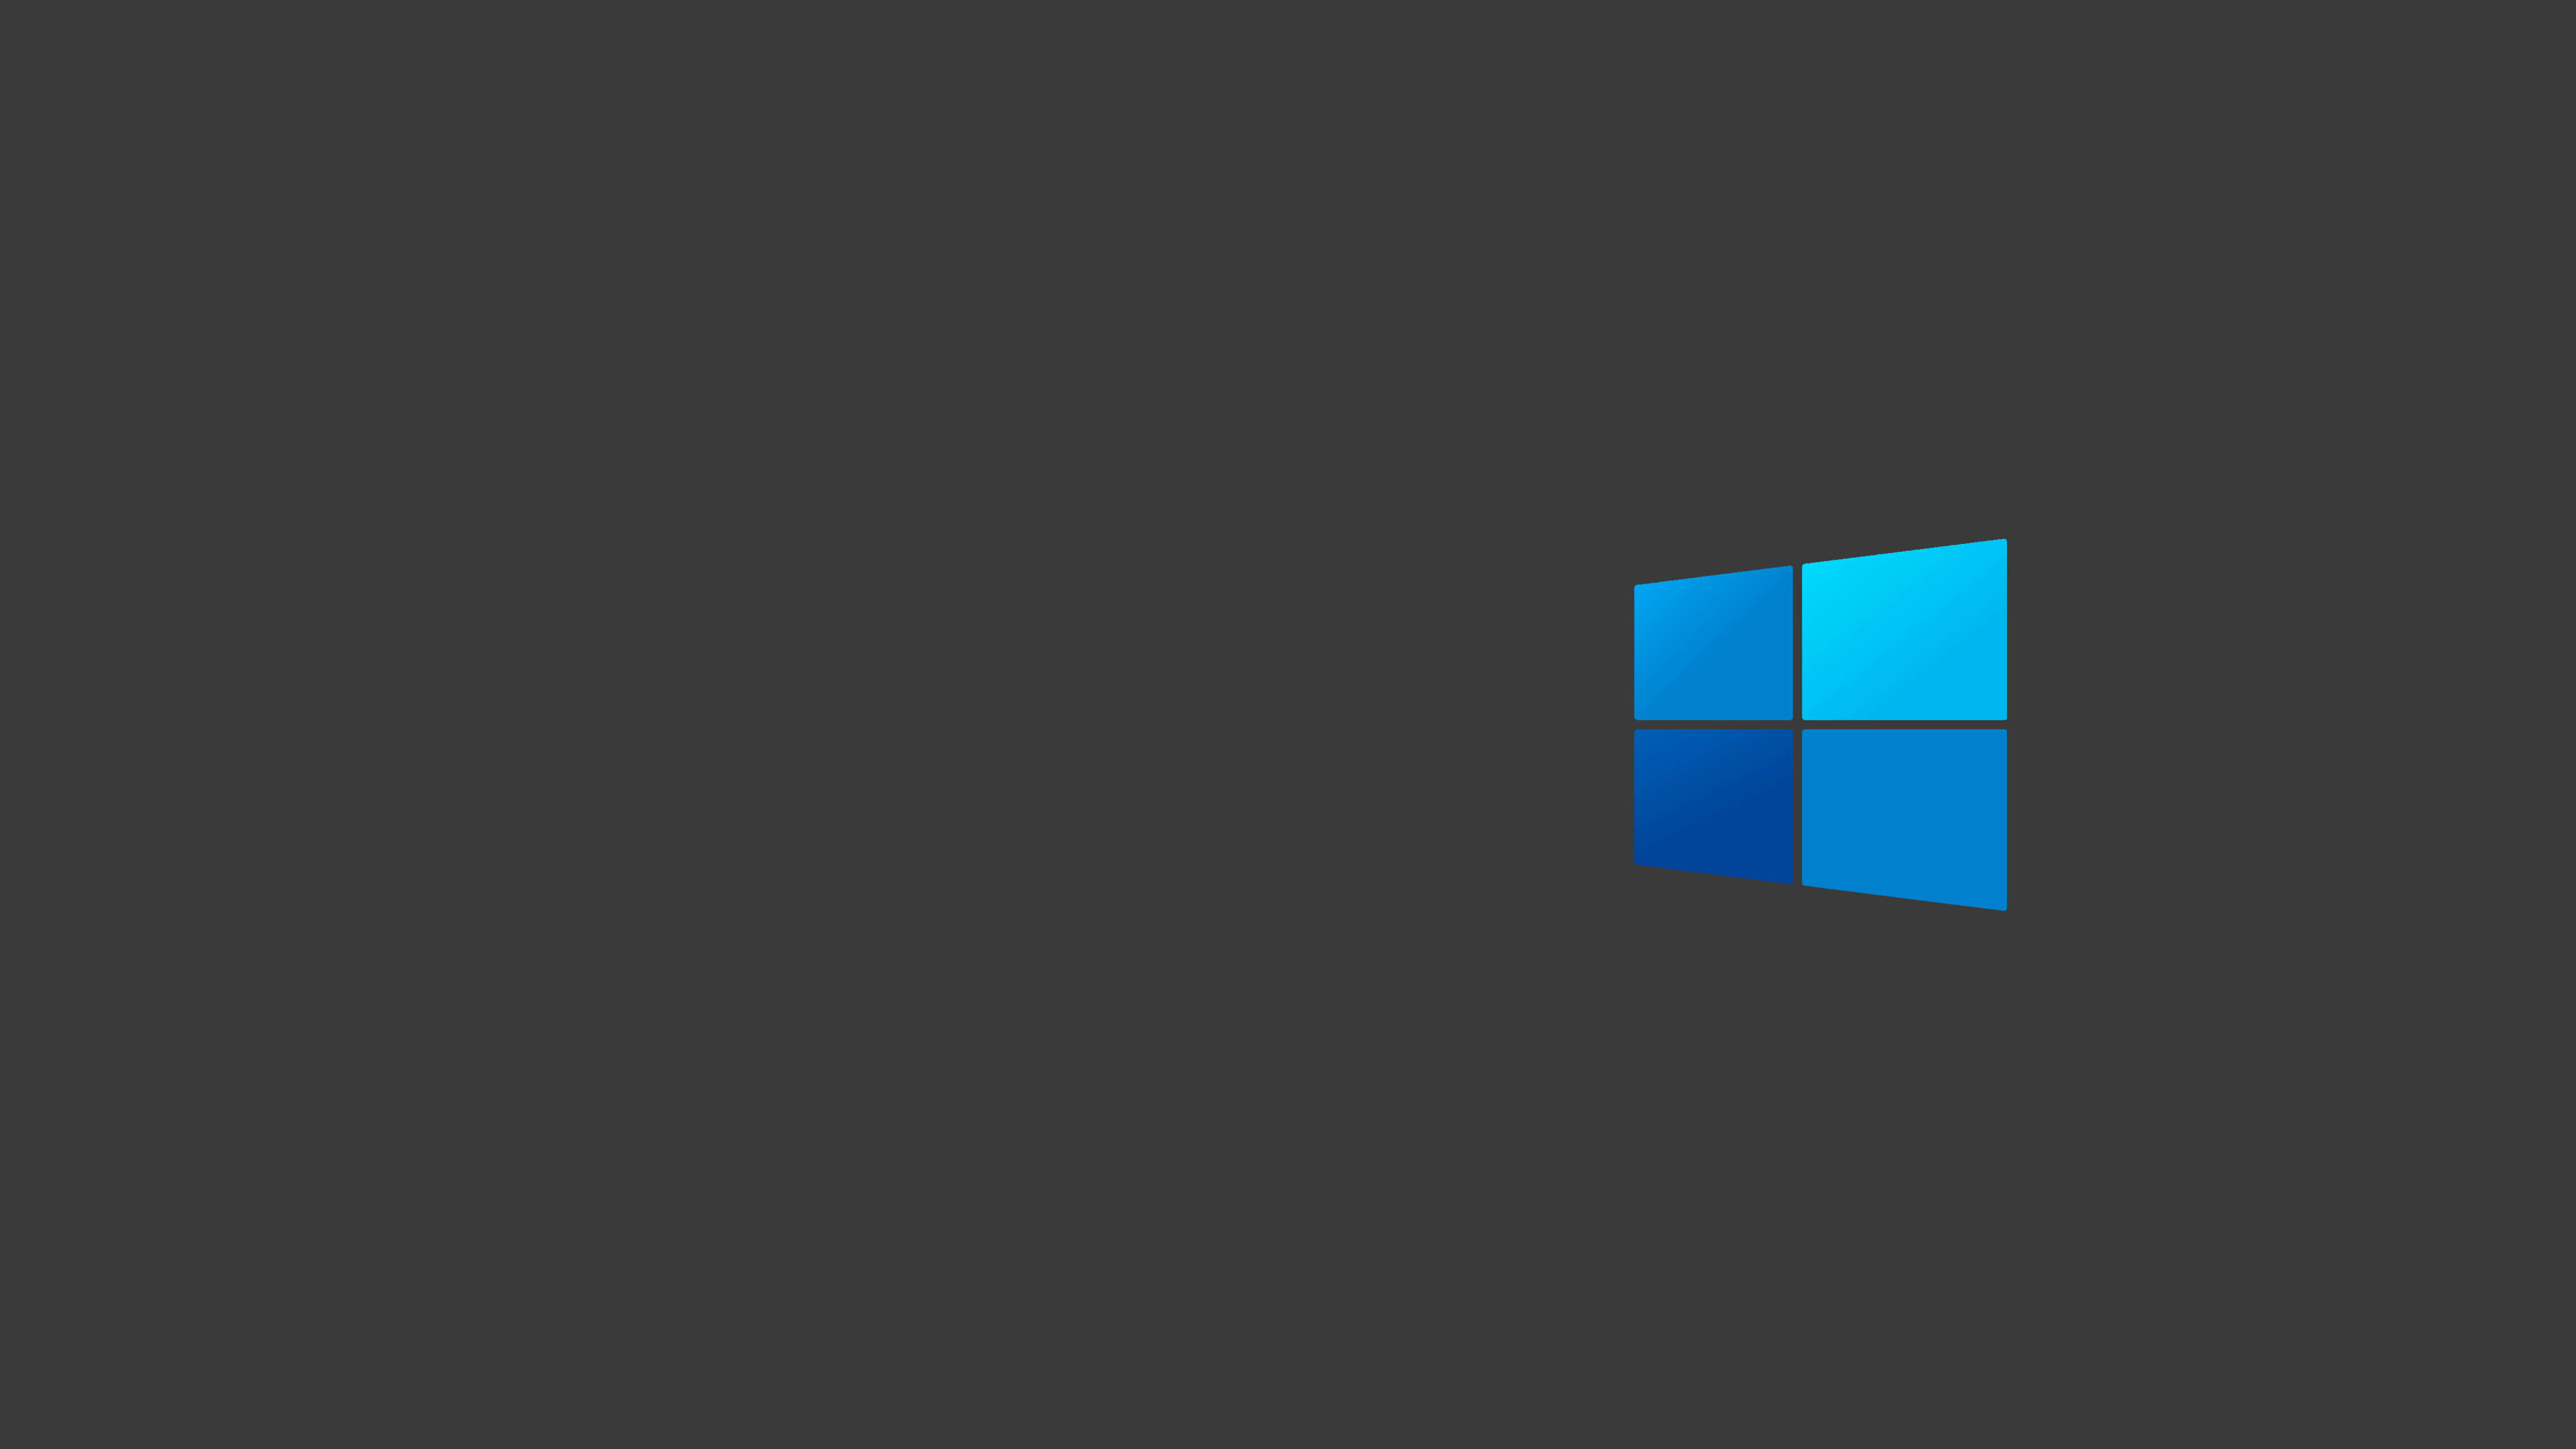 5120x2880 Windows 10 Dark Logo Minimal 5k Wallpaper Hd Minimalist 4k